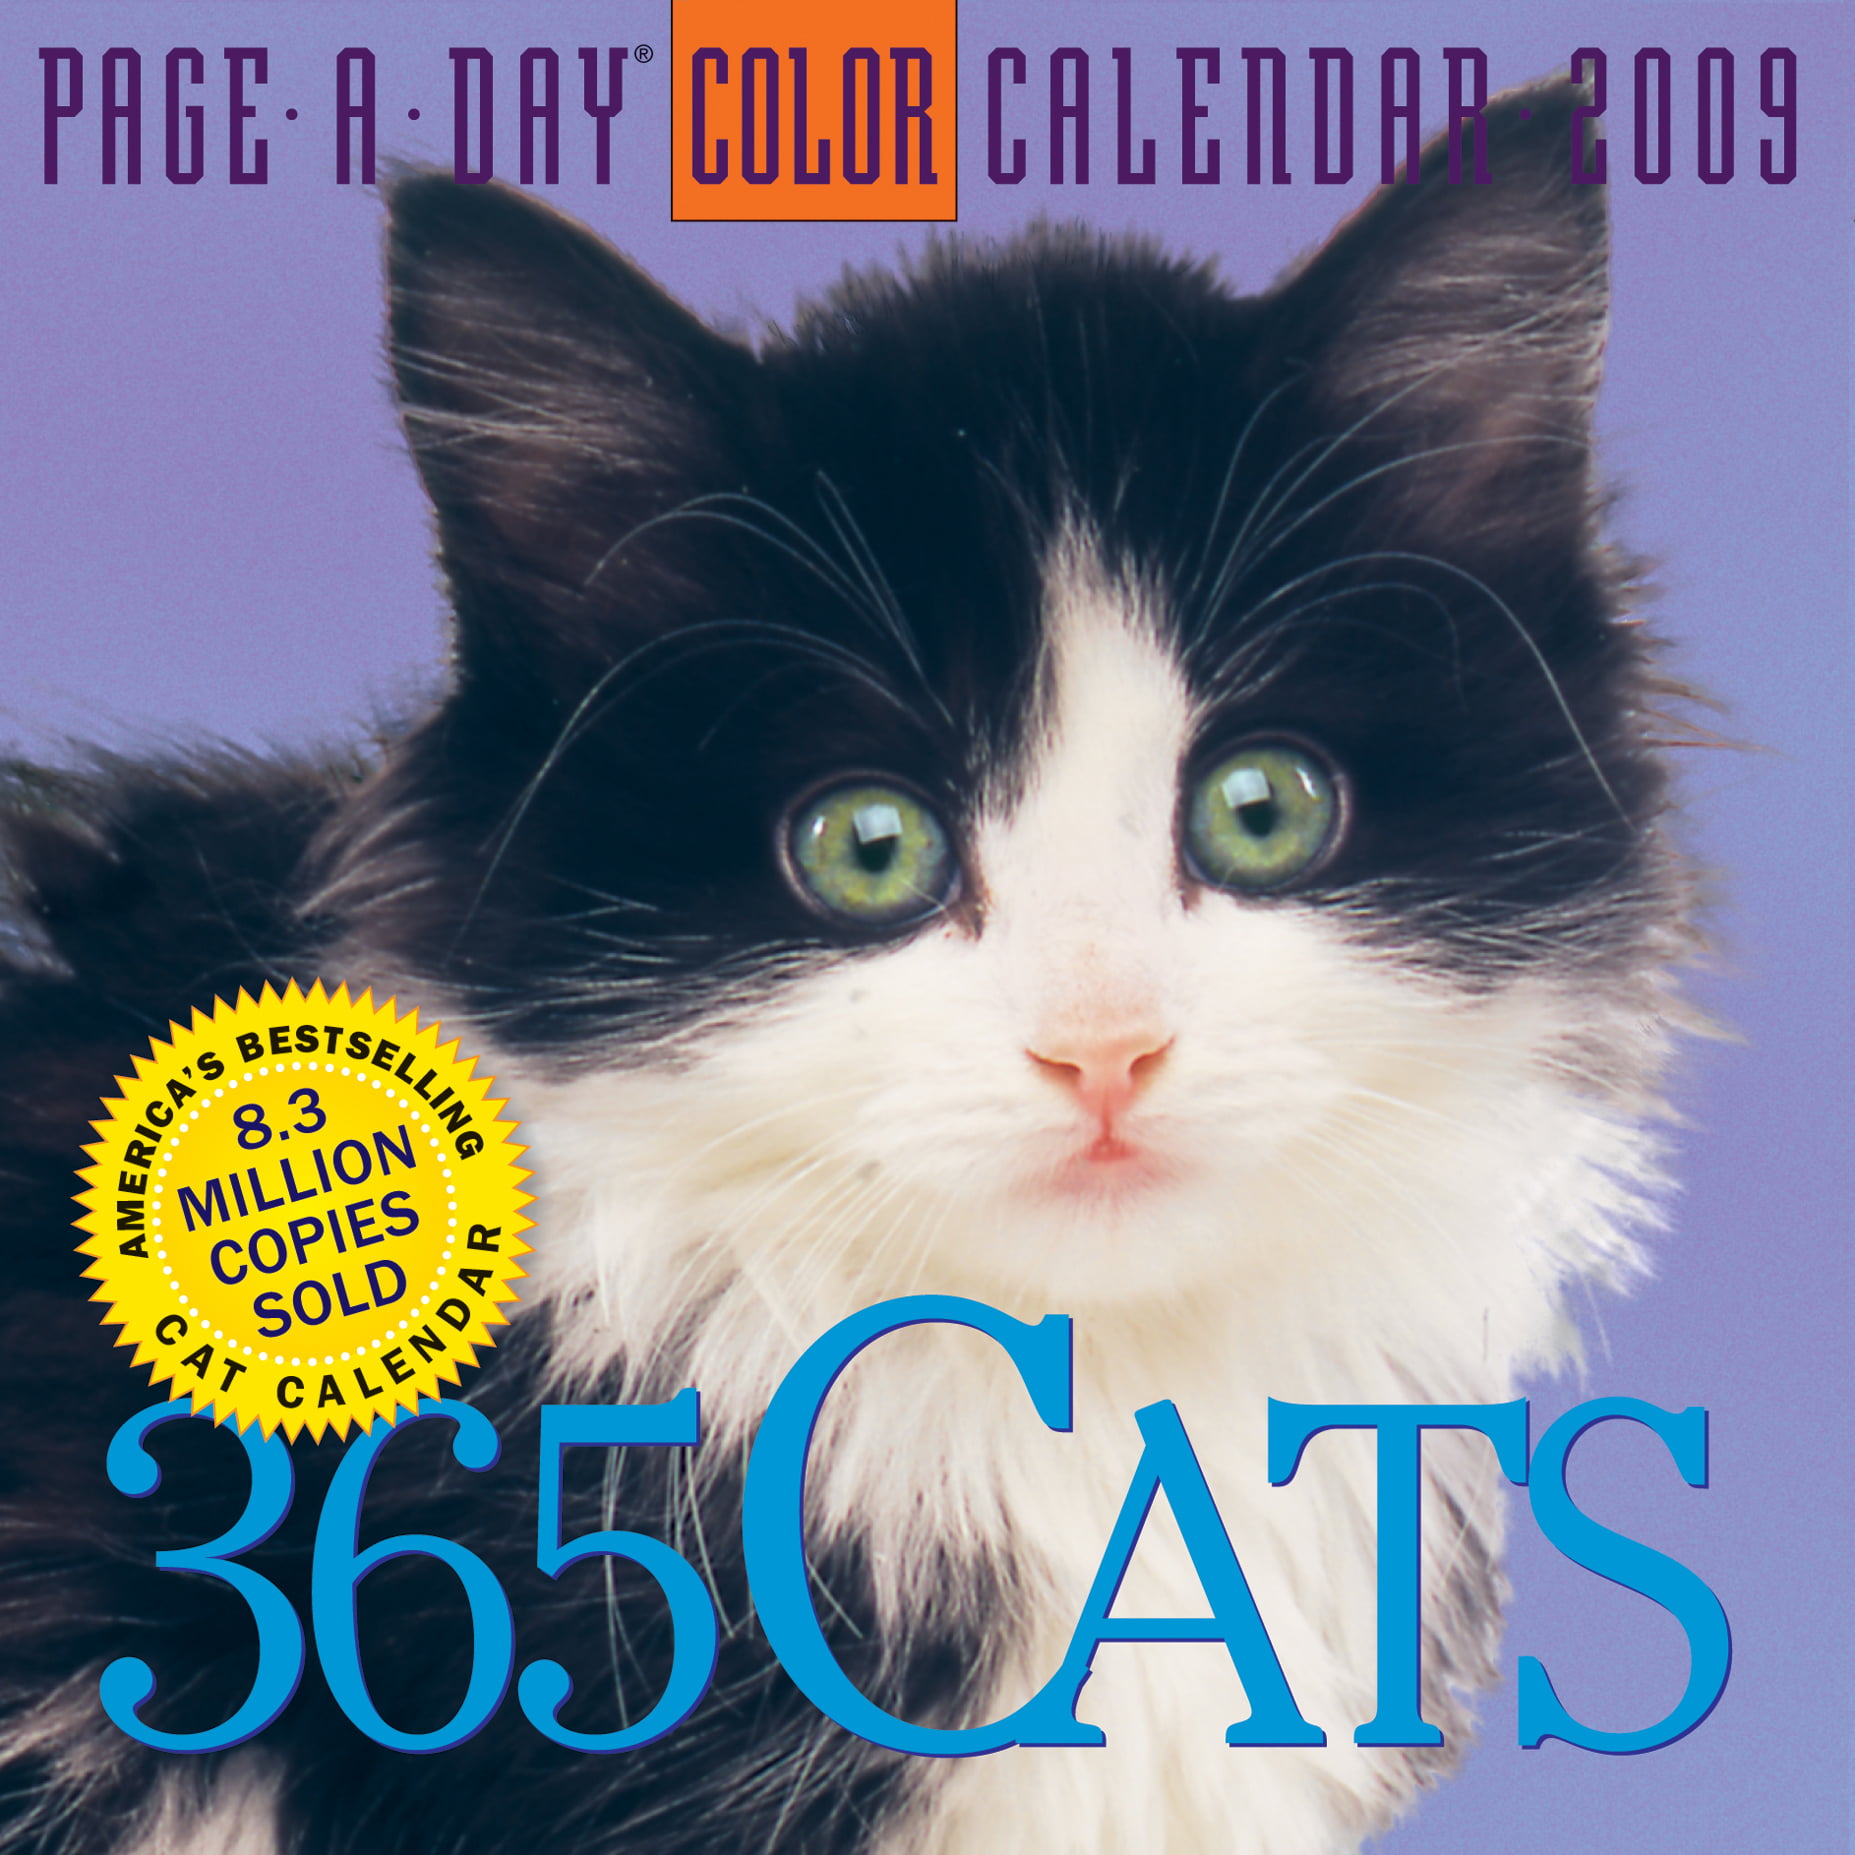 365-cats-page-a-day-calendar-2009-walmart-walmart